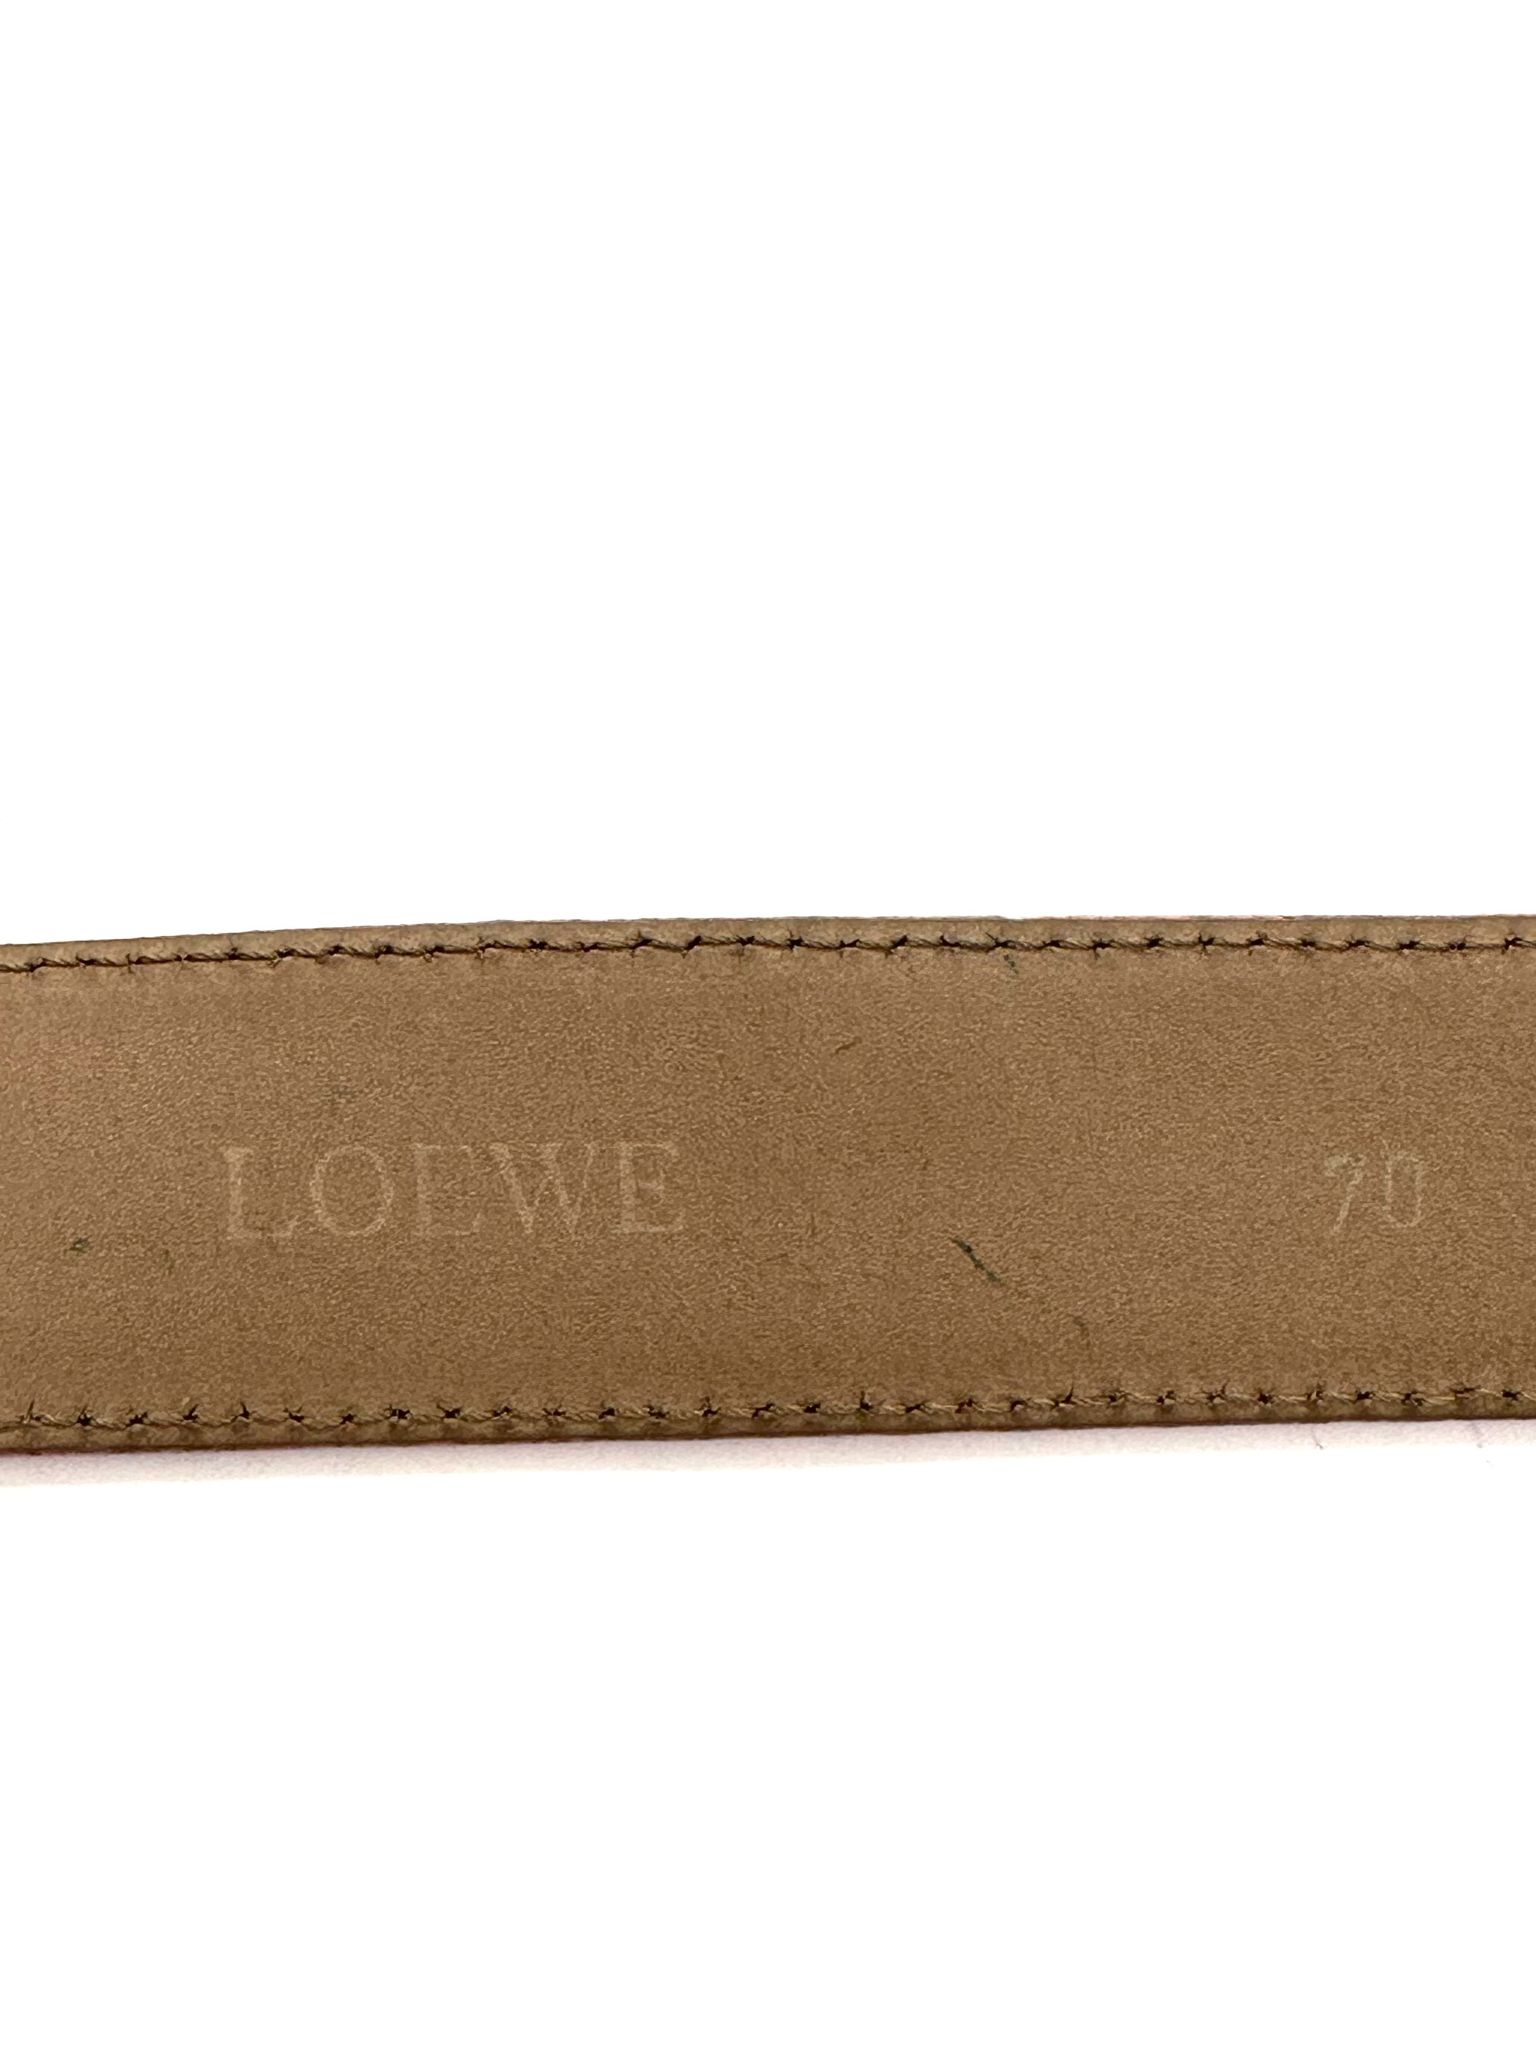 Cinturón Loewe